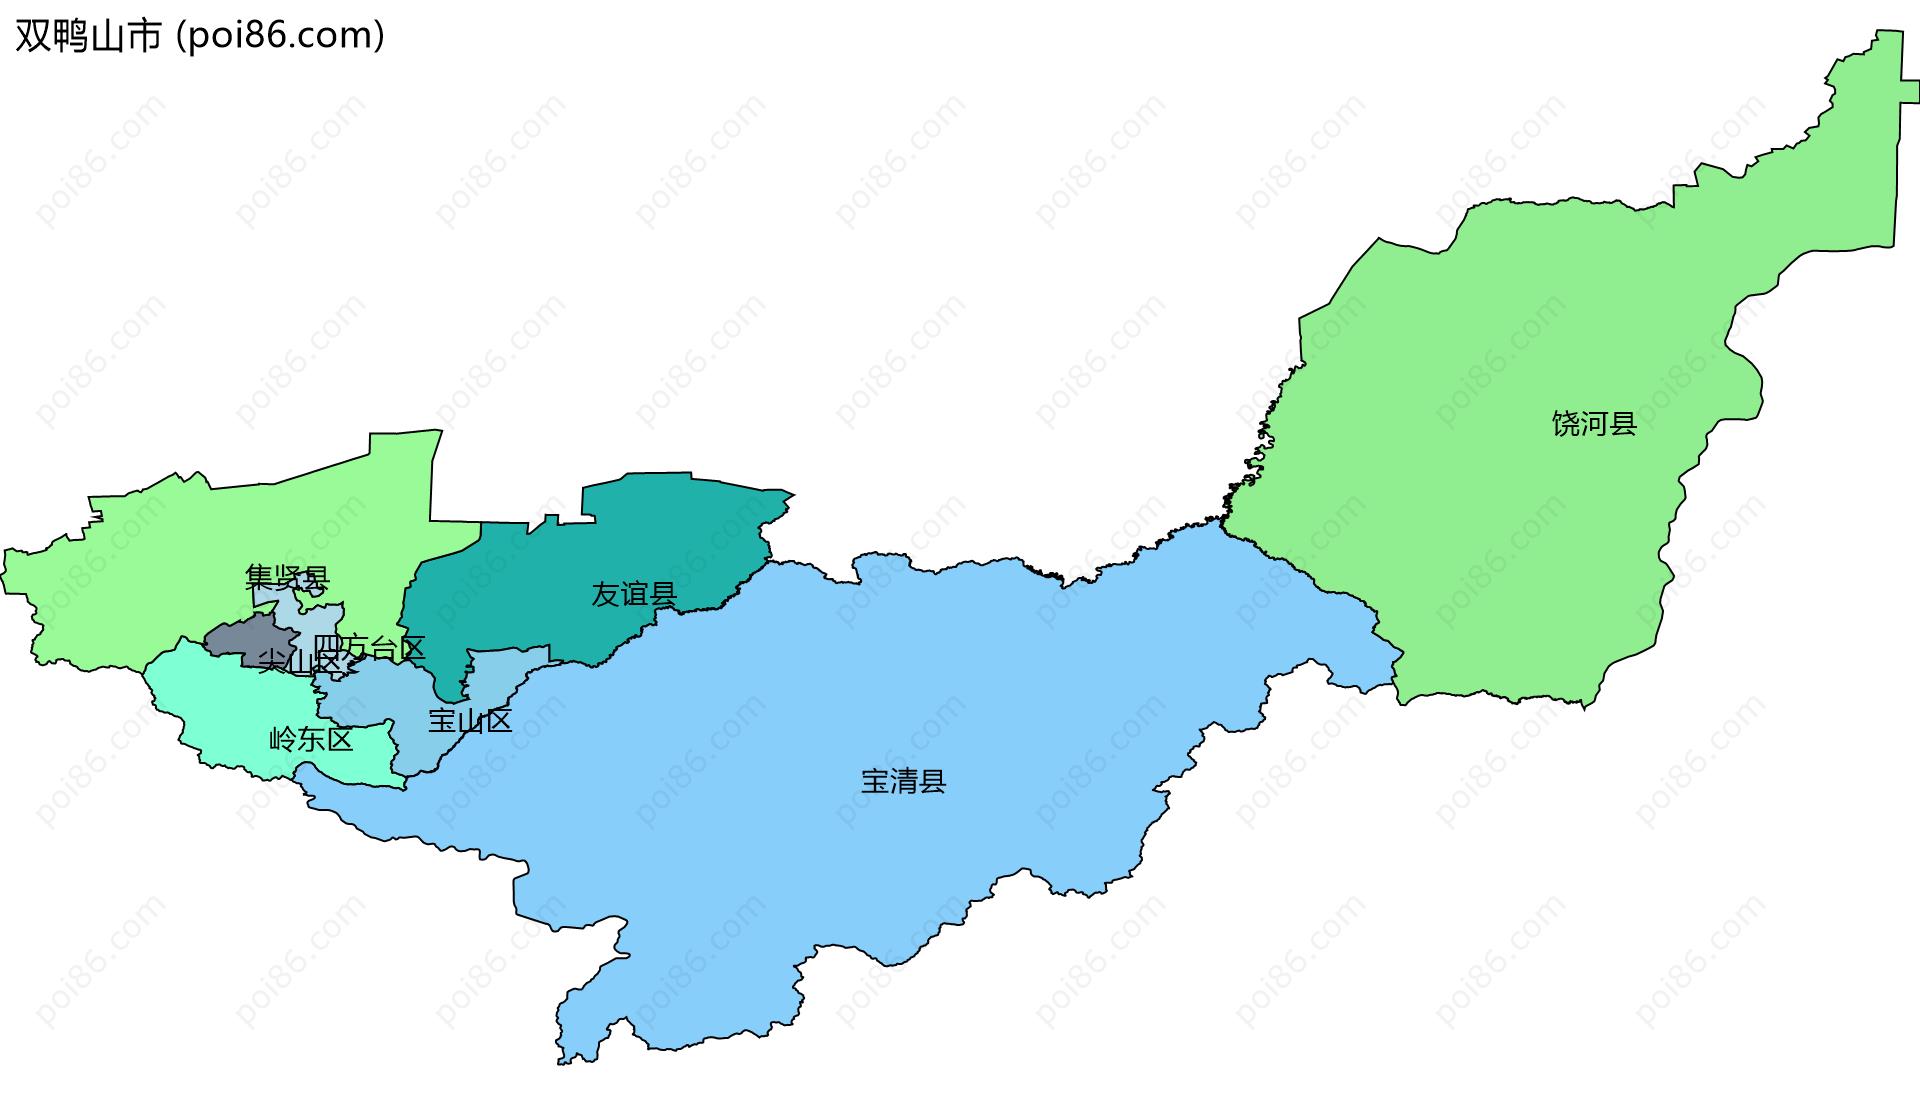 双鸭山市边界地图